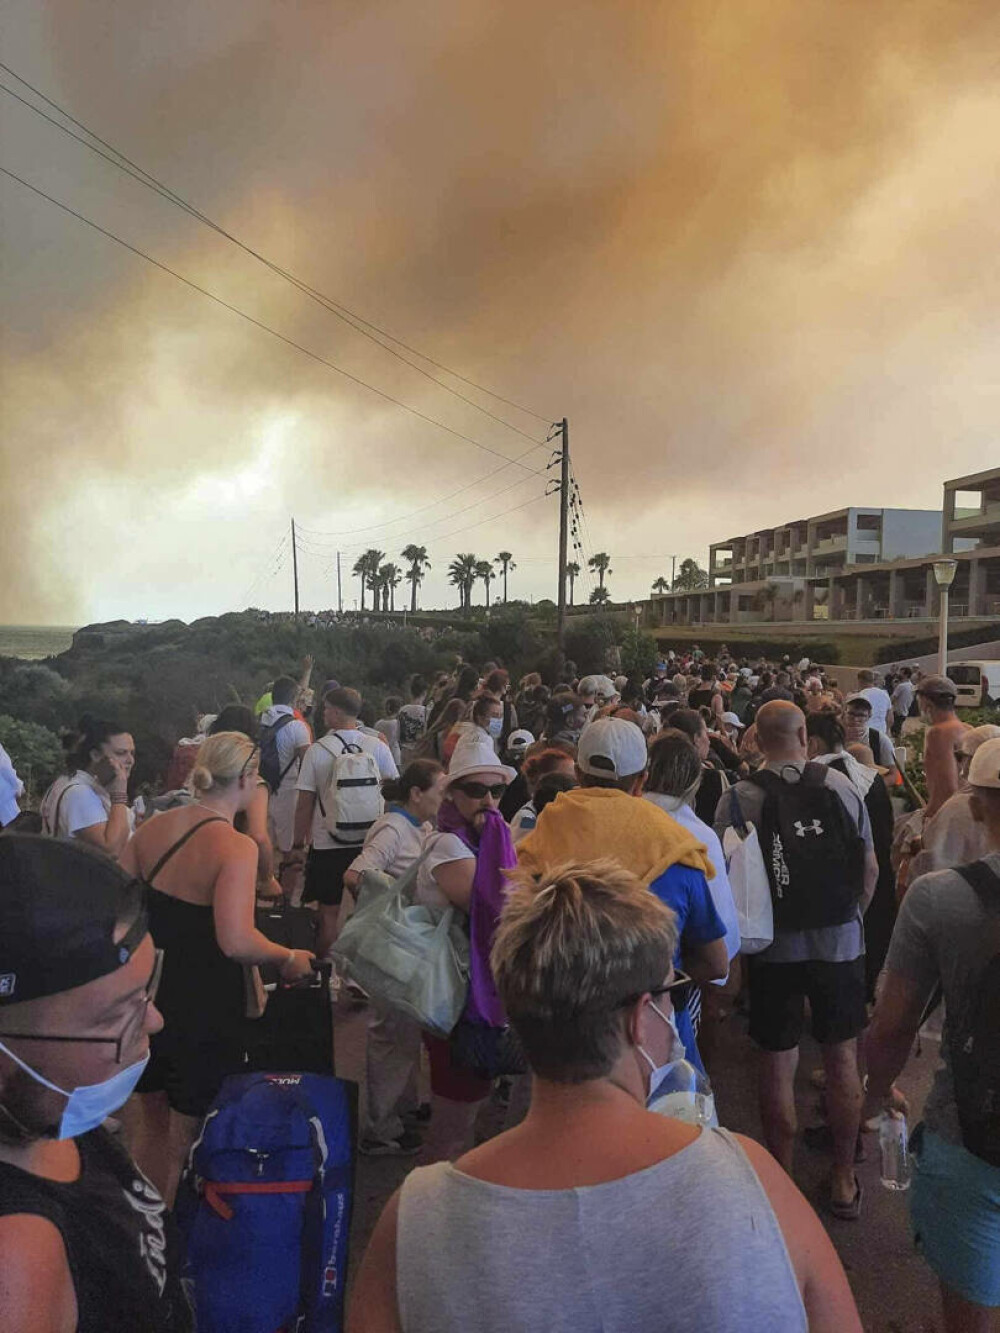 Imagini apocaliptice pe insula Rodos din Grecia, din cauza incendiilor. Oameni cu valize în brațe, căutând refugiu - Imaginea 3